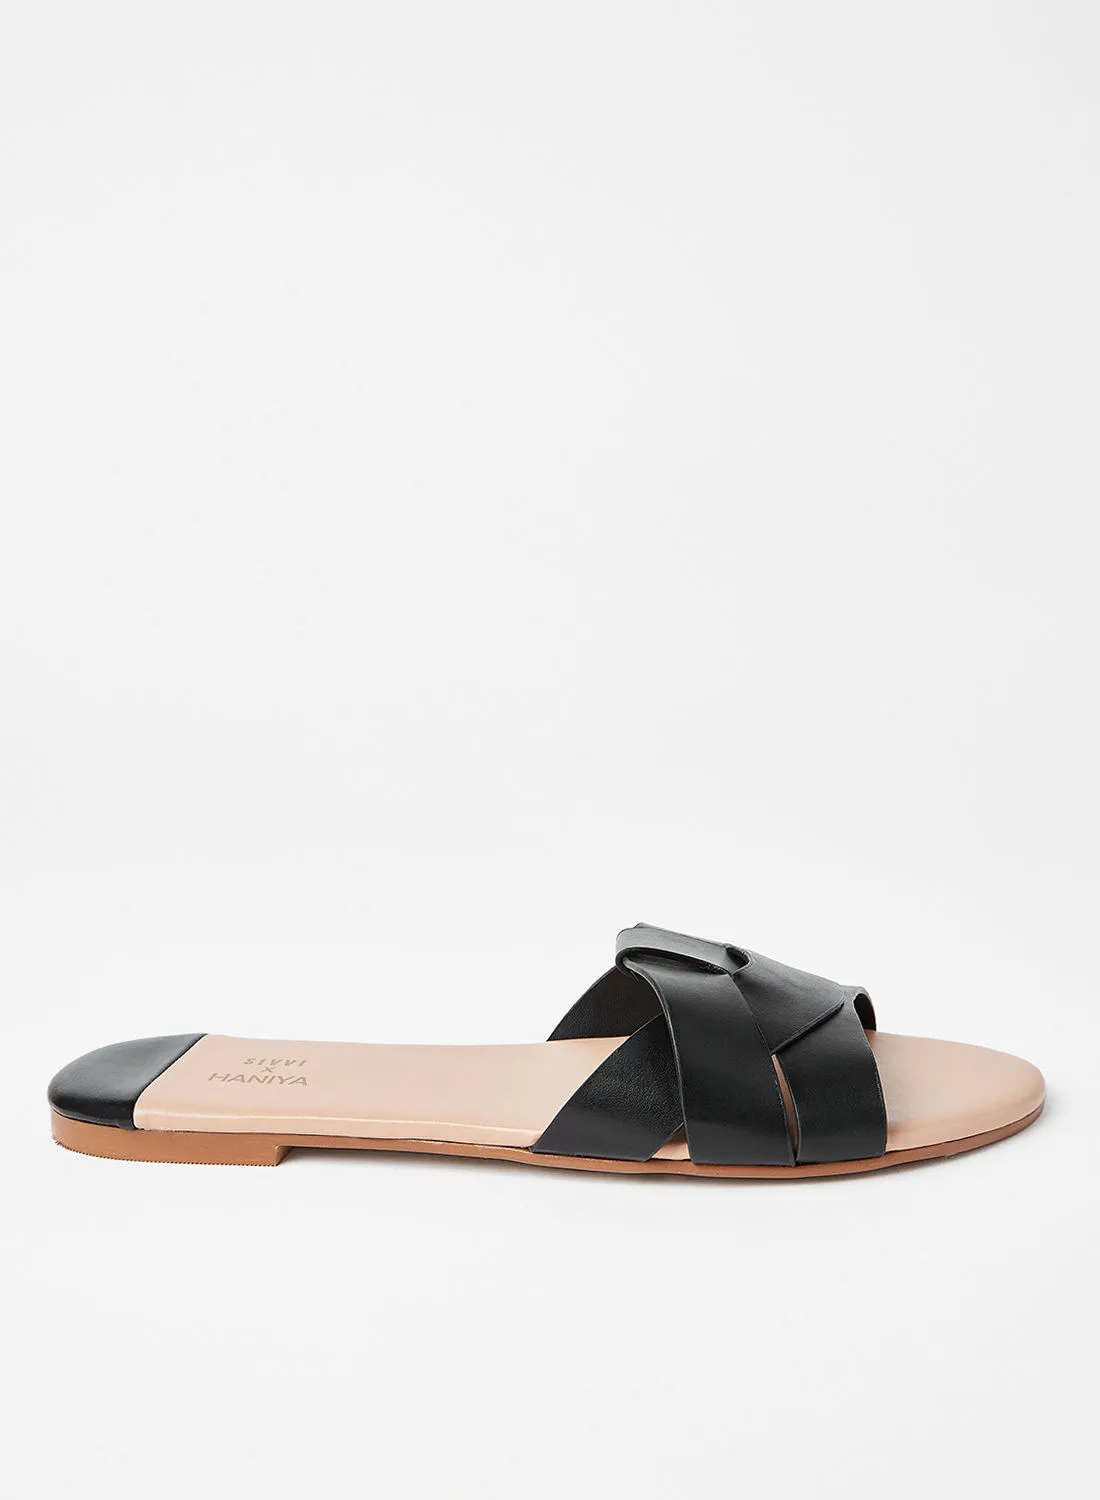 SIVVI for HANIYA Strappy Slip On Sandals أسود